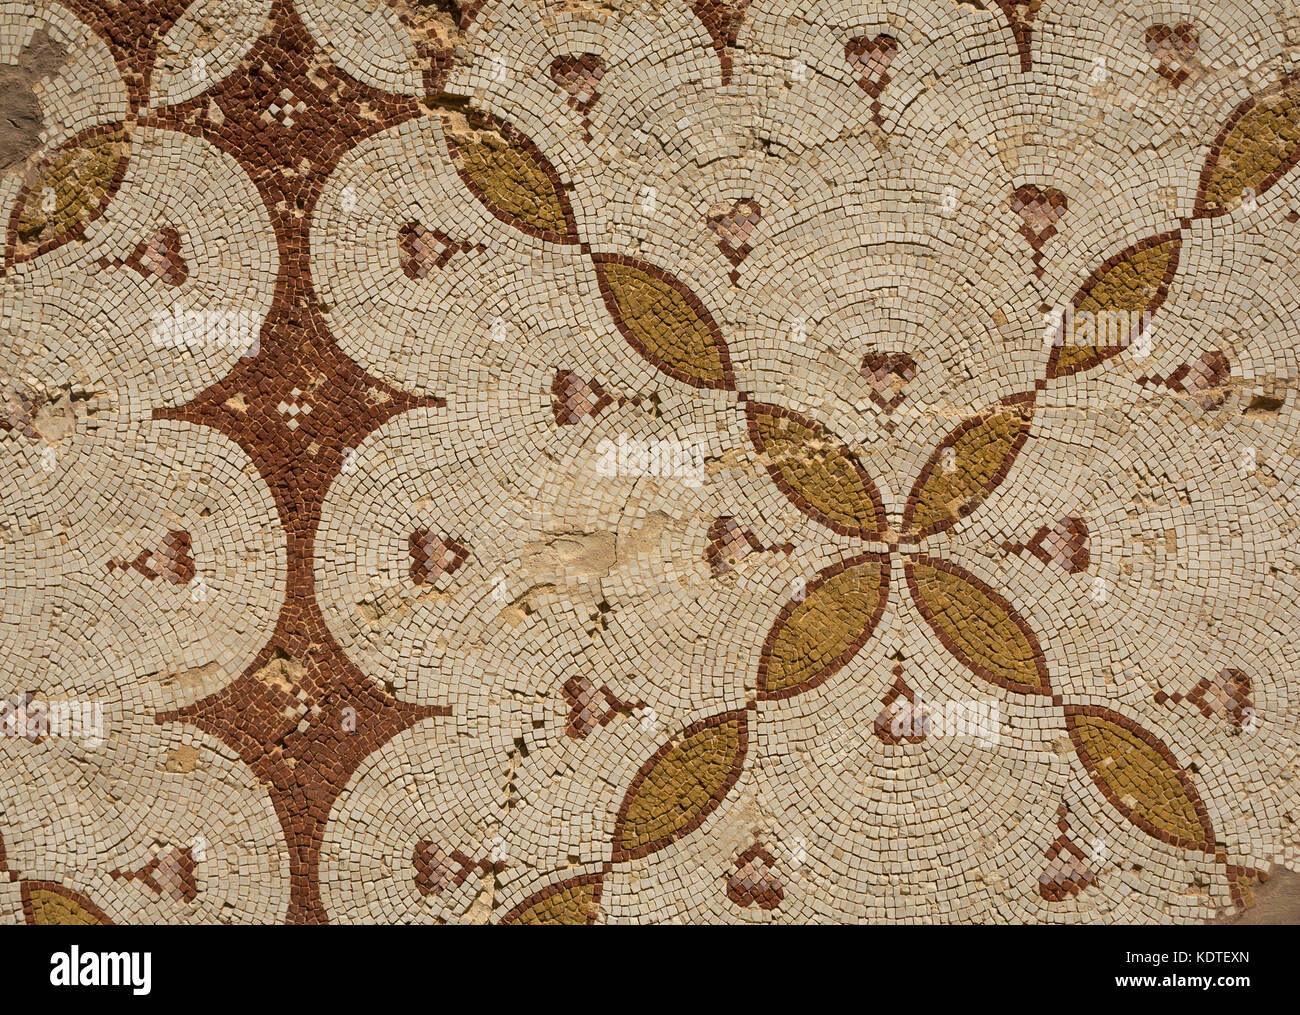 Close up dettaglio del mosaico geometrico pattern, città romana di Jerash, antica Gerasa, sito archeologico, Giordania, Medio Oriente Foto Stock